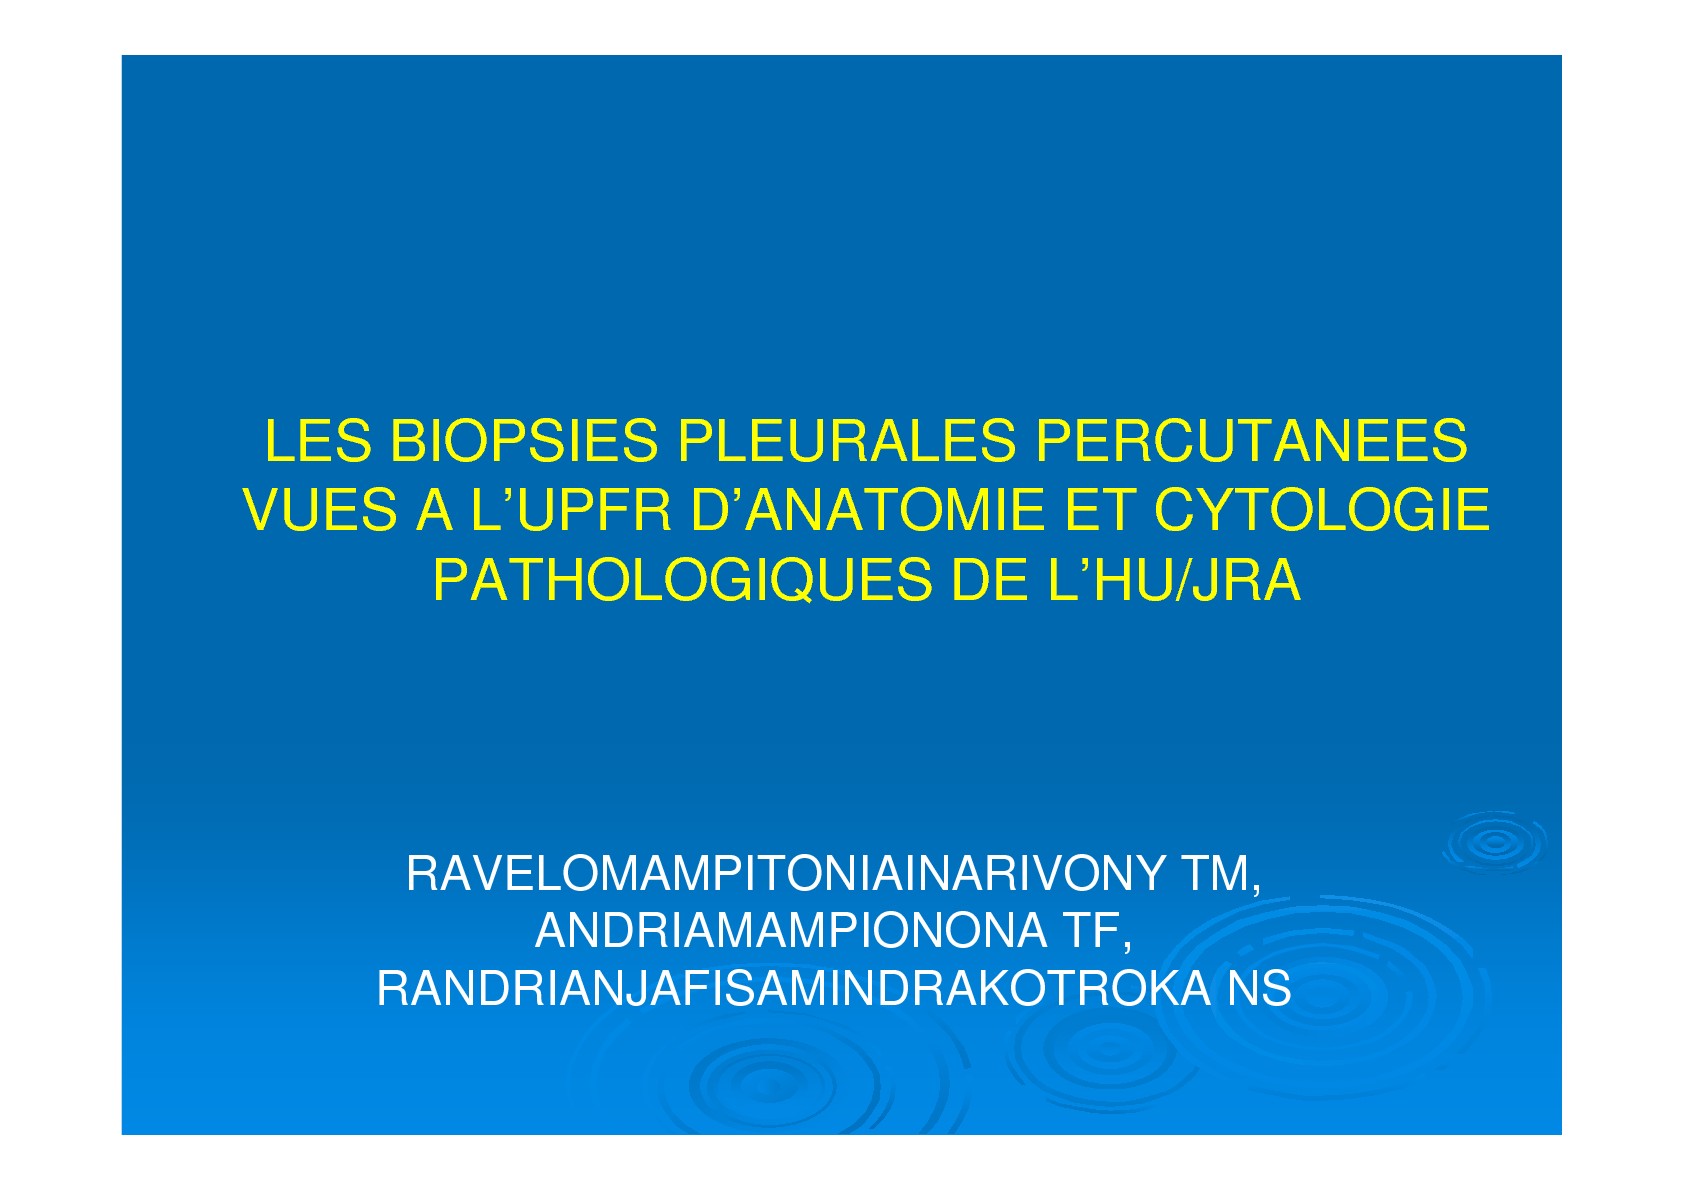 Les biopsies pleurales vues à L'UPFR d'anatomie et de cytologie pathologique de L'HUJRA